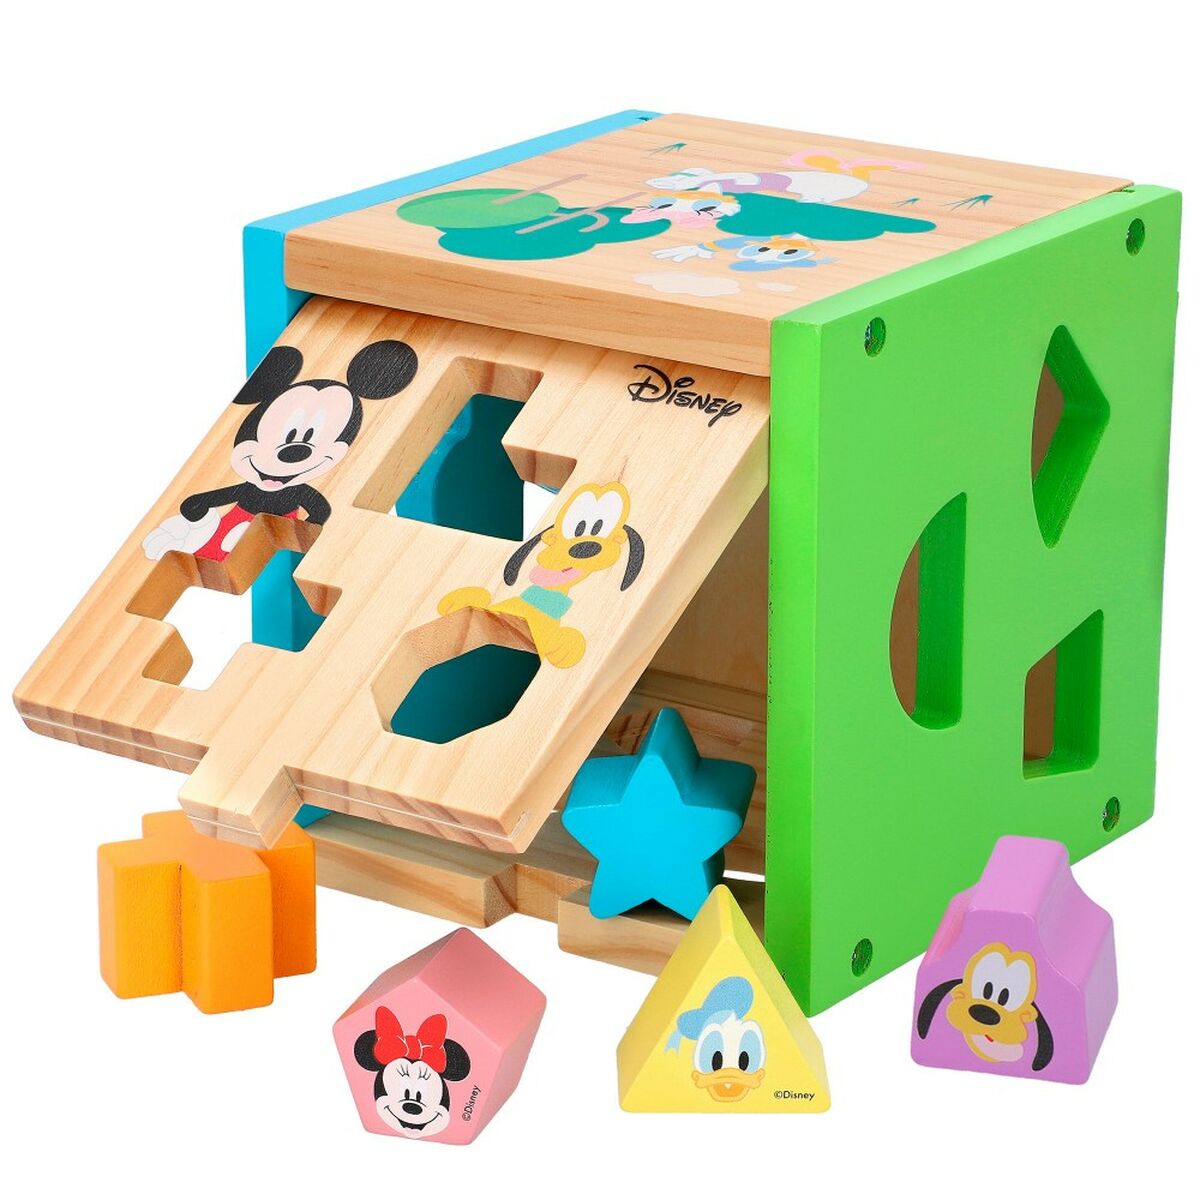 Puzzle di Legno per Bambini Disney 14 Parti 15 x 15 x 15 cm (6 Unità) - Disponibile in 3-4 giorni lavorativi